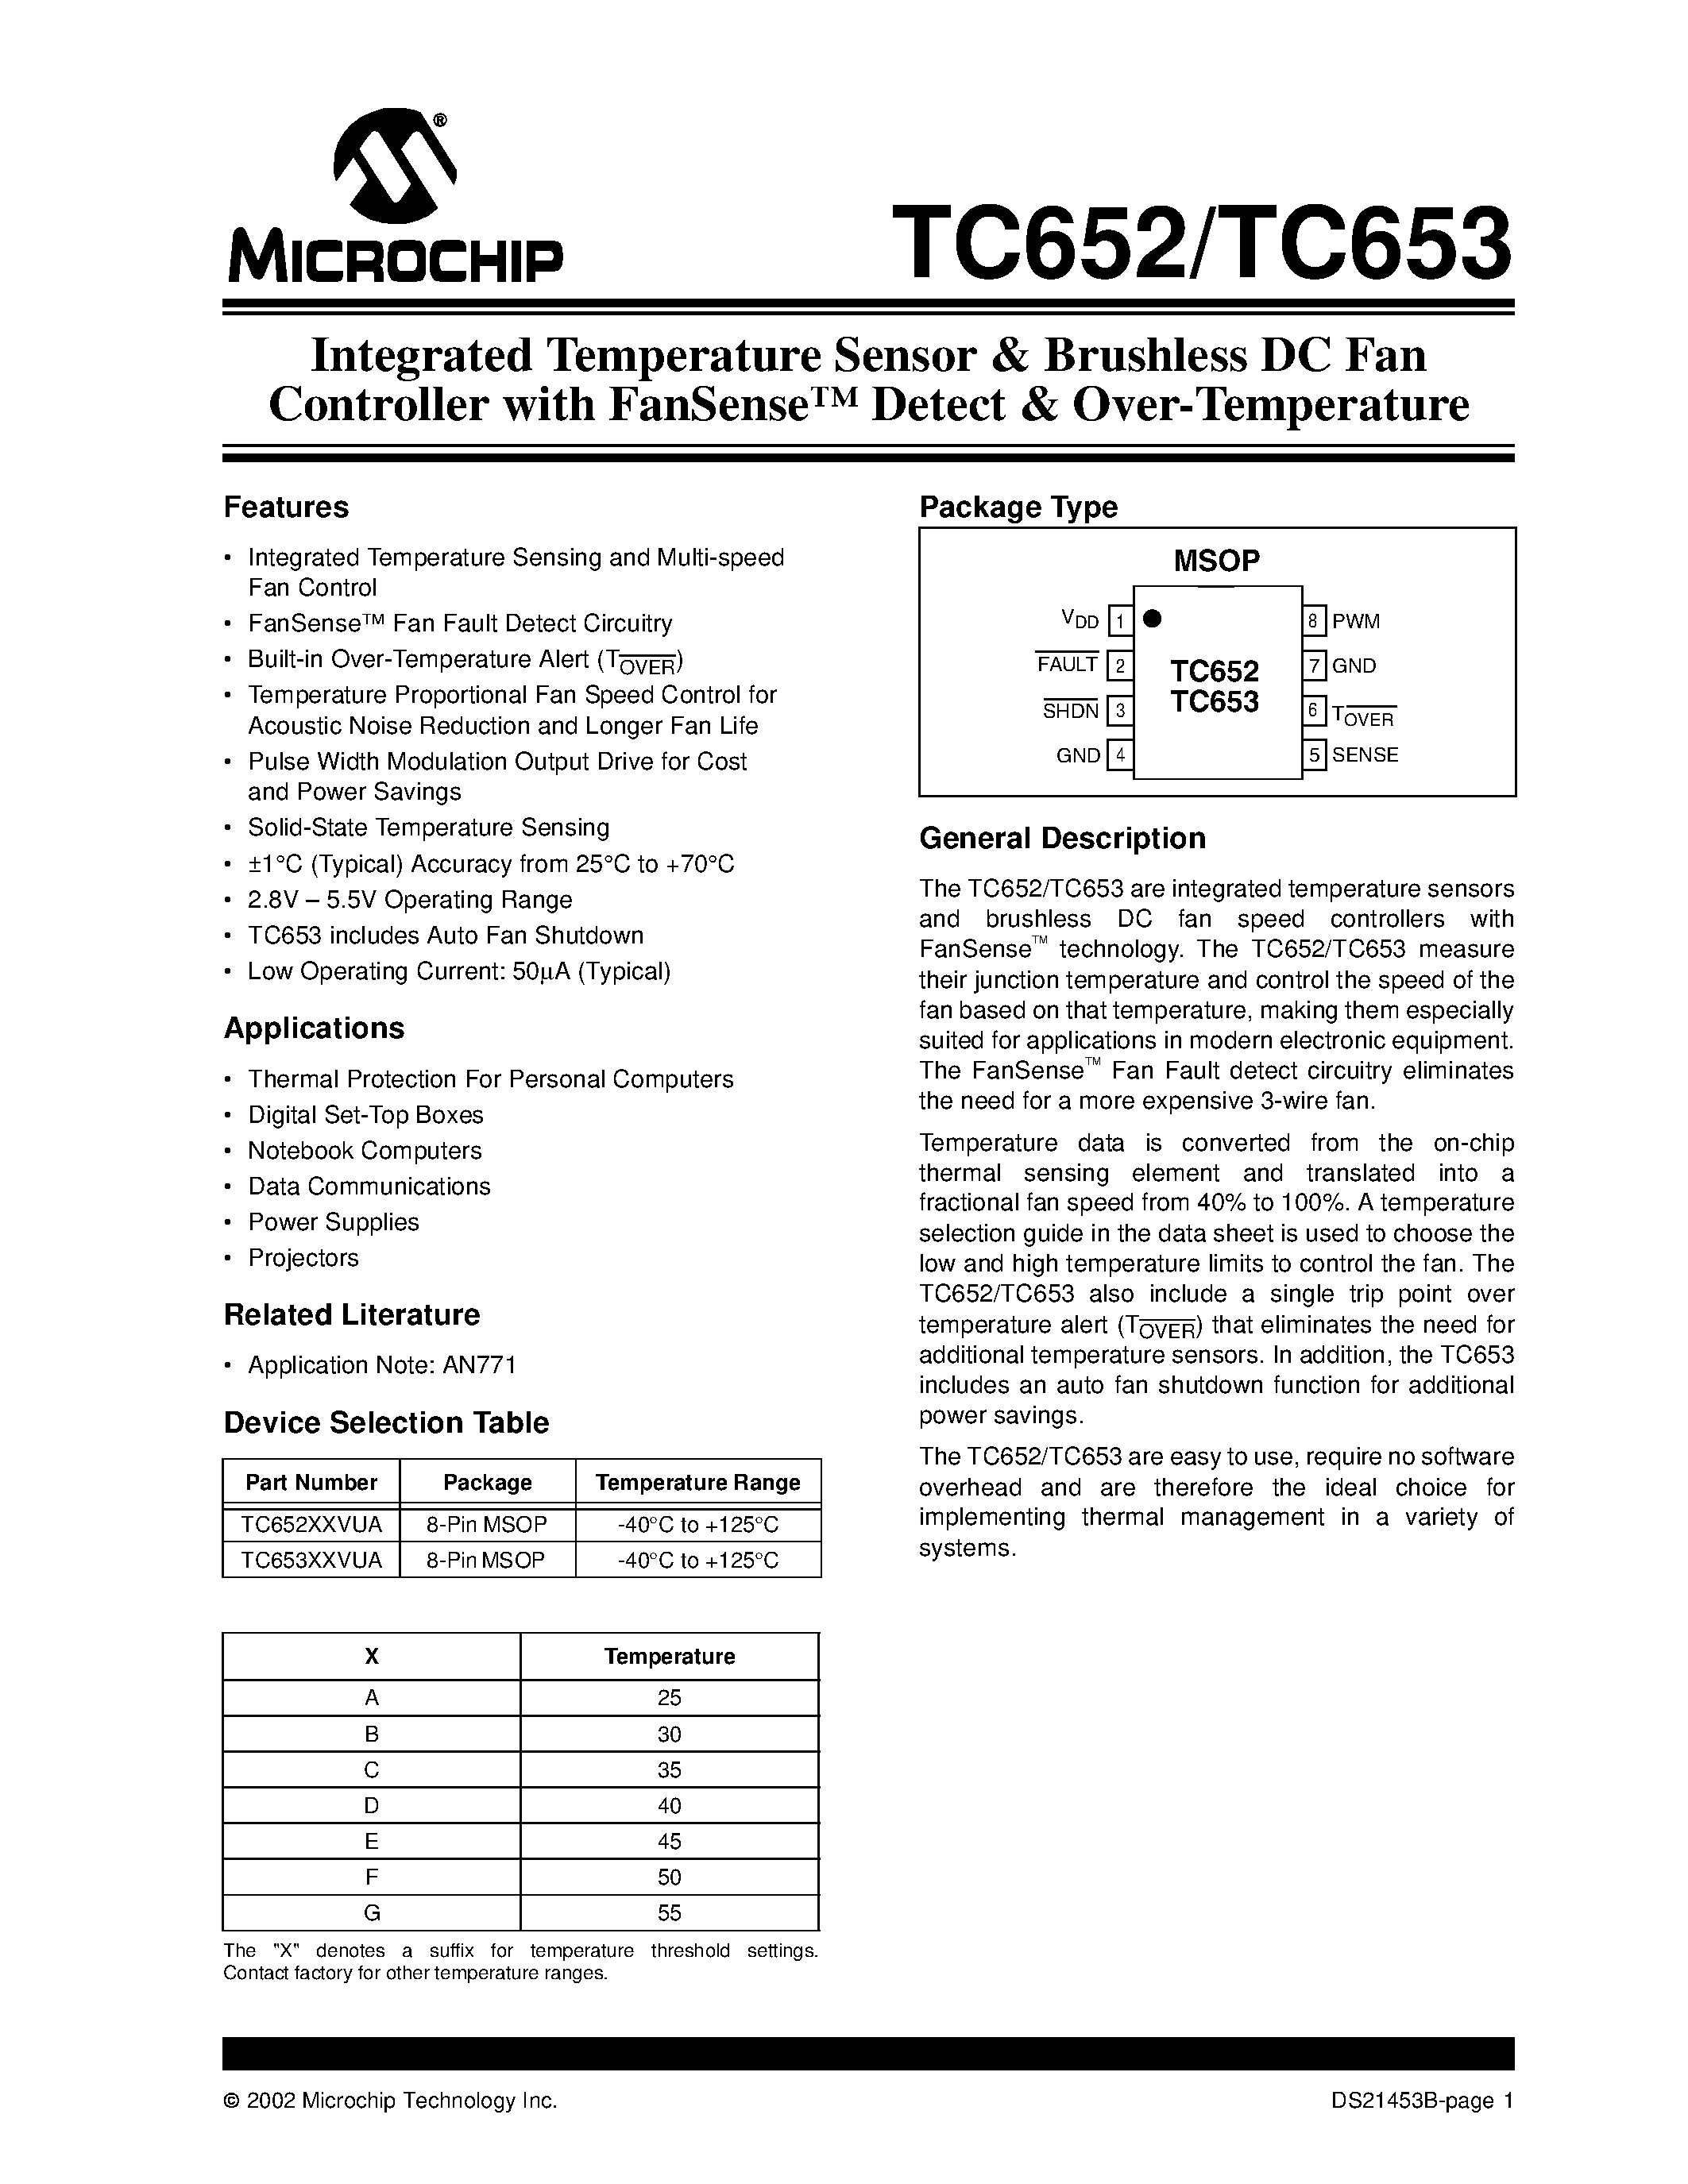 Даташит TC652 - (TC652 / TC653) Integrated Temperature Sensor & Brushless DC Fan Controller страница 1